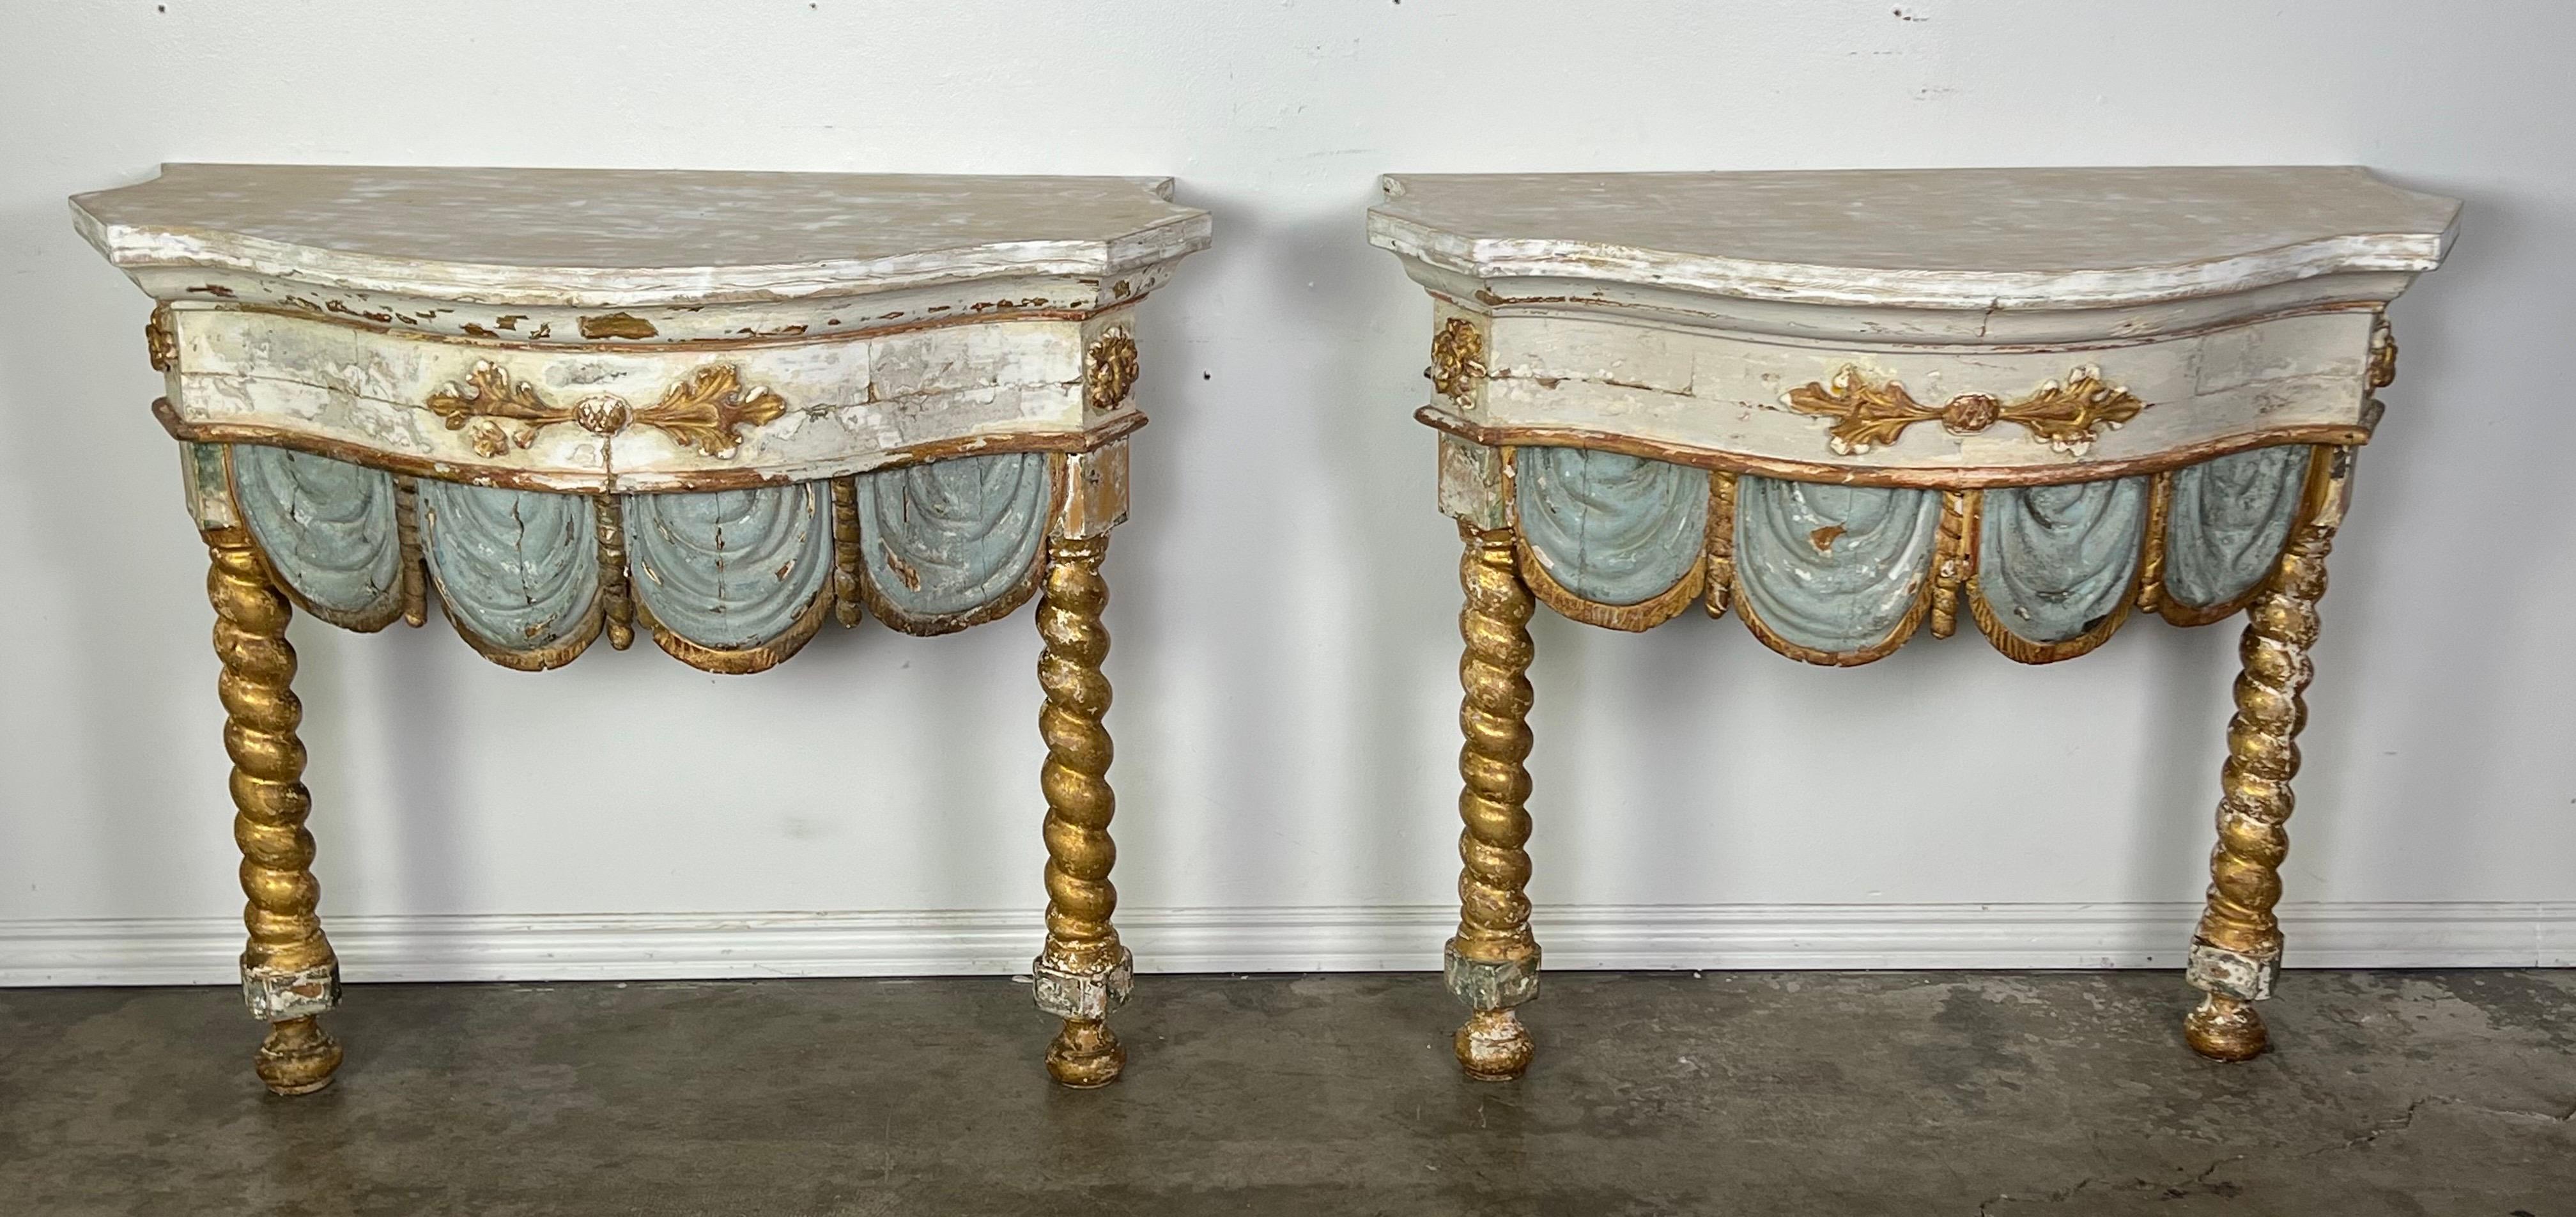 Zwei italienische Konsolen aus dem frühen 19. Jahrhundert, bemalt und vergoldet, mit den beschriebenen Merkmalen wie geraden, gedrehten und vergoldeten Holzbeinen, einer blau-goldenen Schürze und einer bemalten Holzplatte.